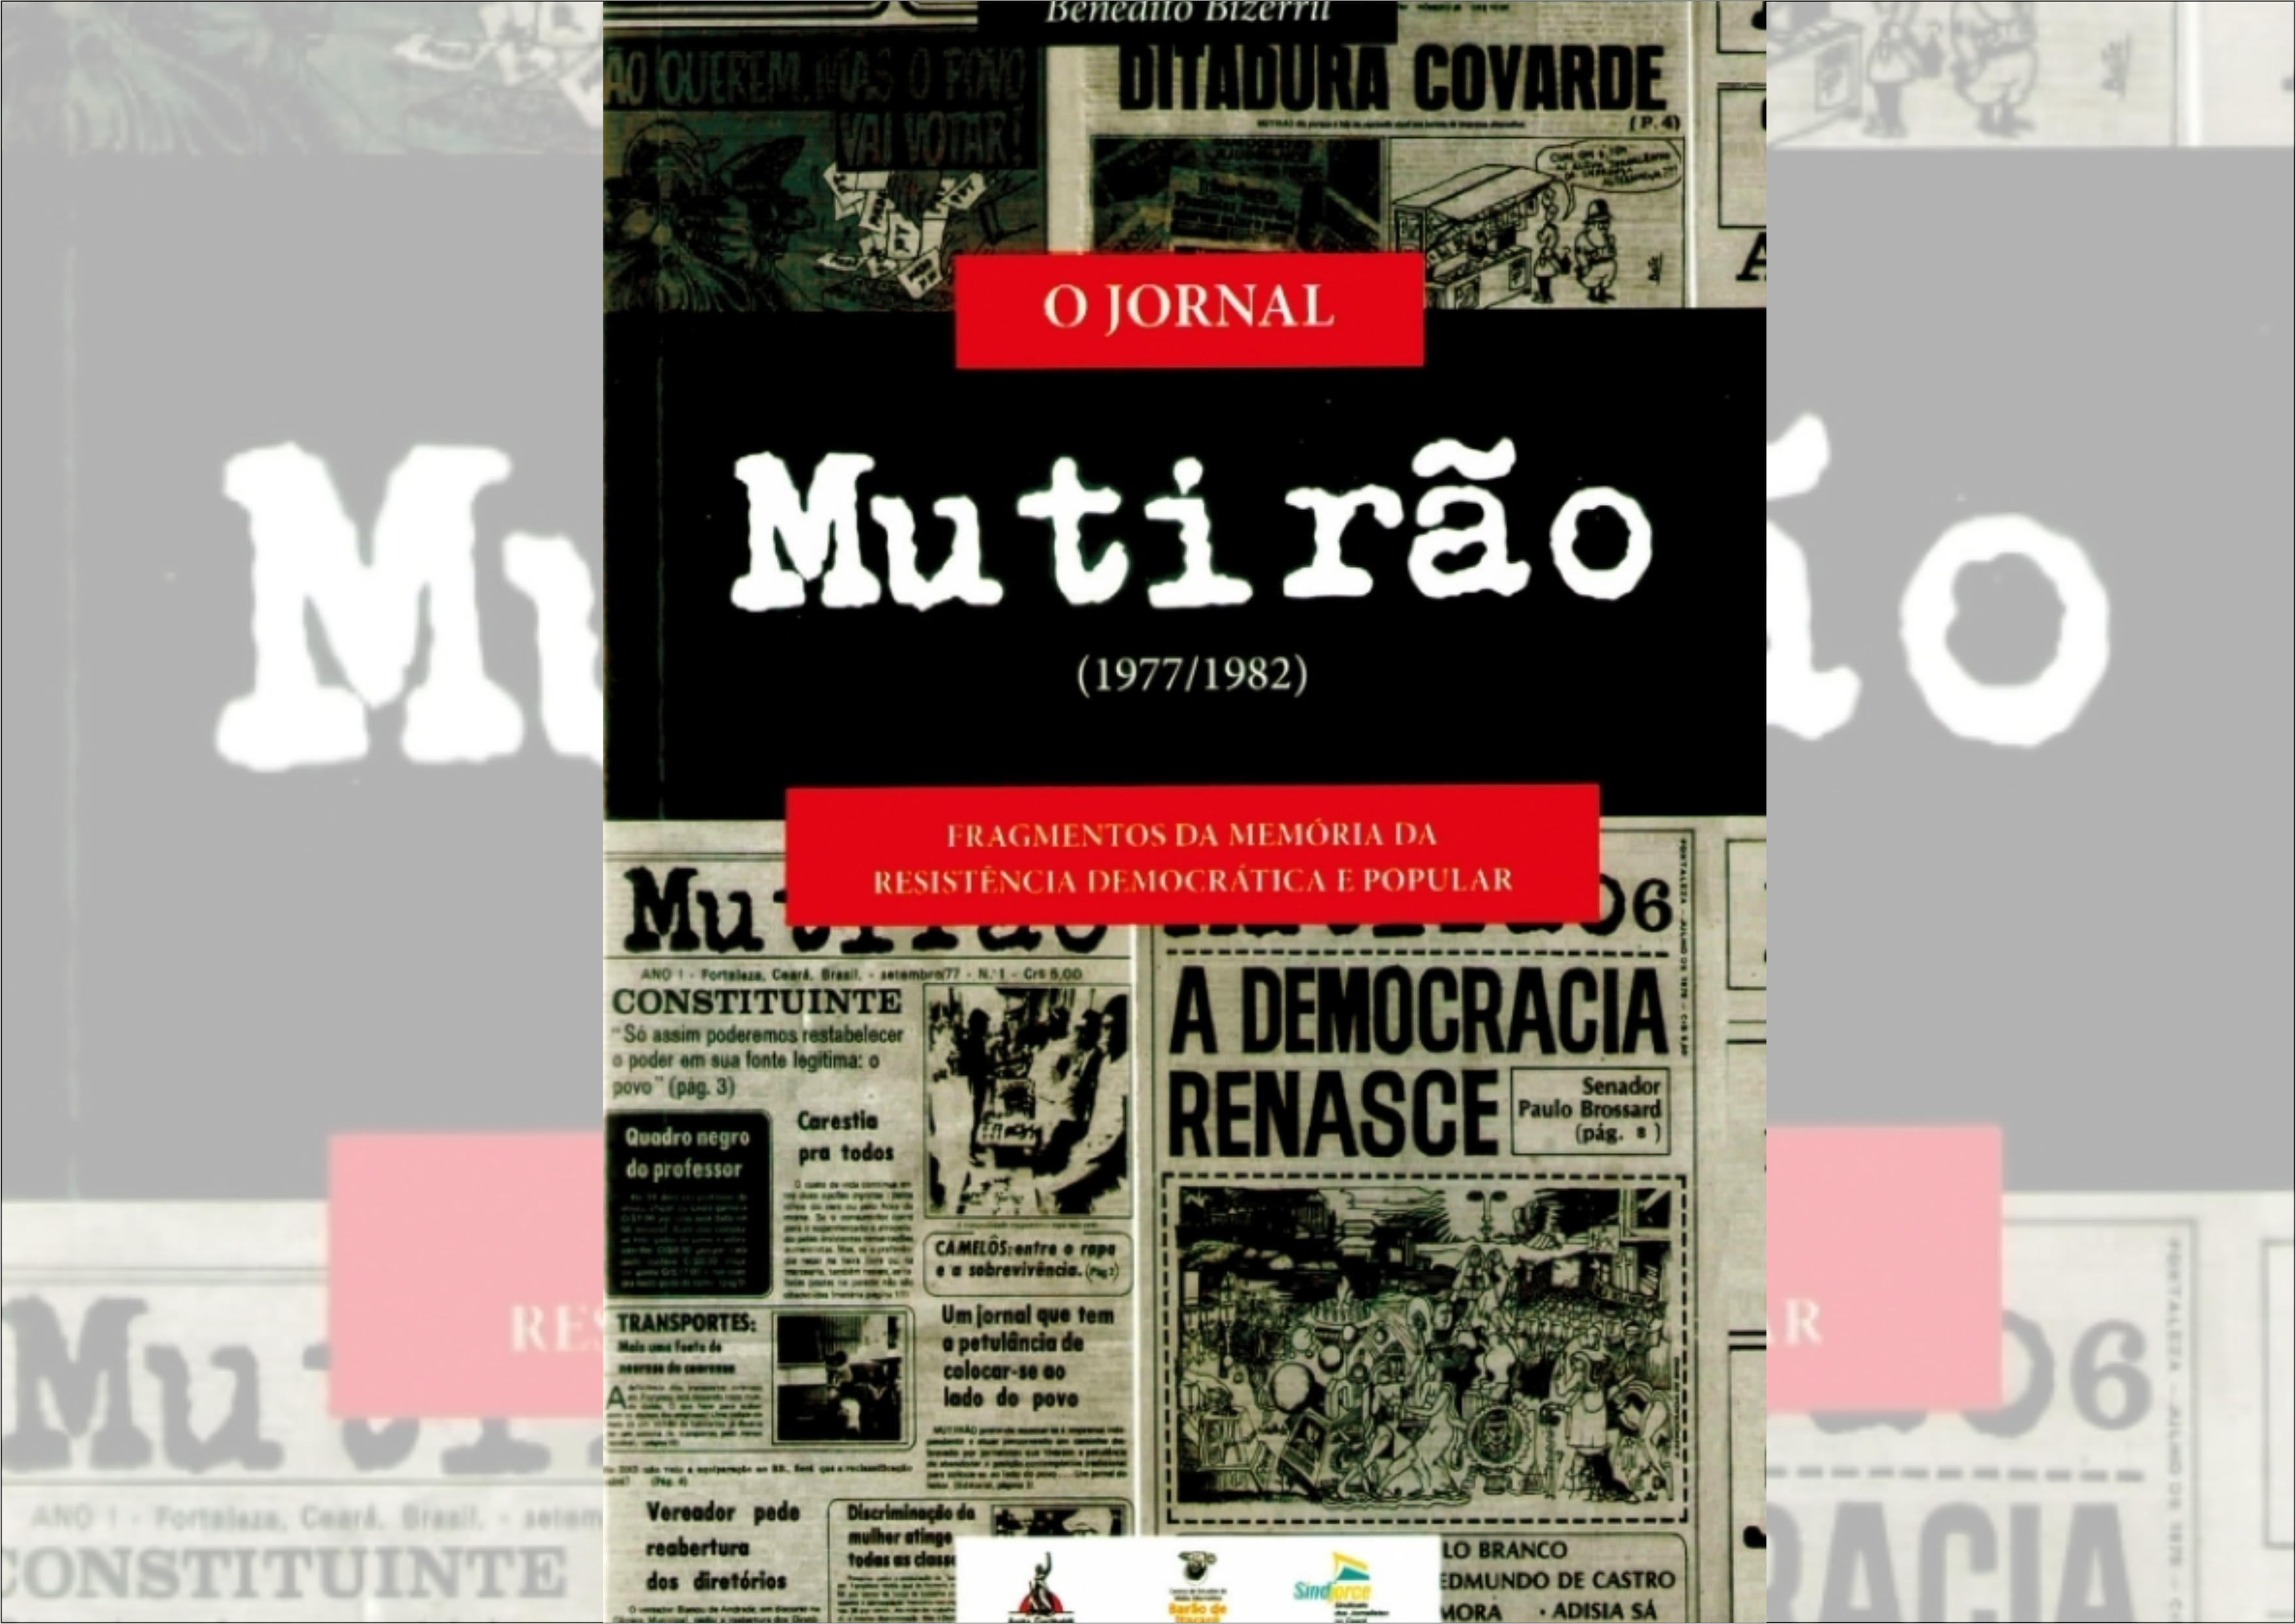 Jornal ícone da resistência à ditadura no Ceará foi impresso em Natal e Mossoró